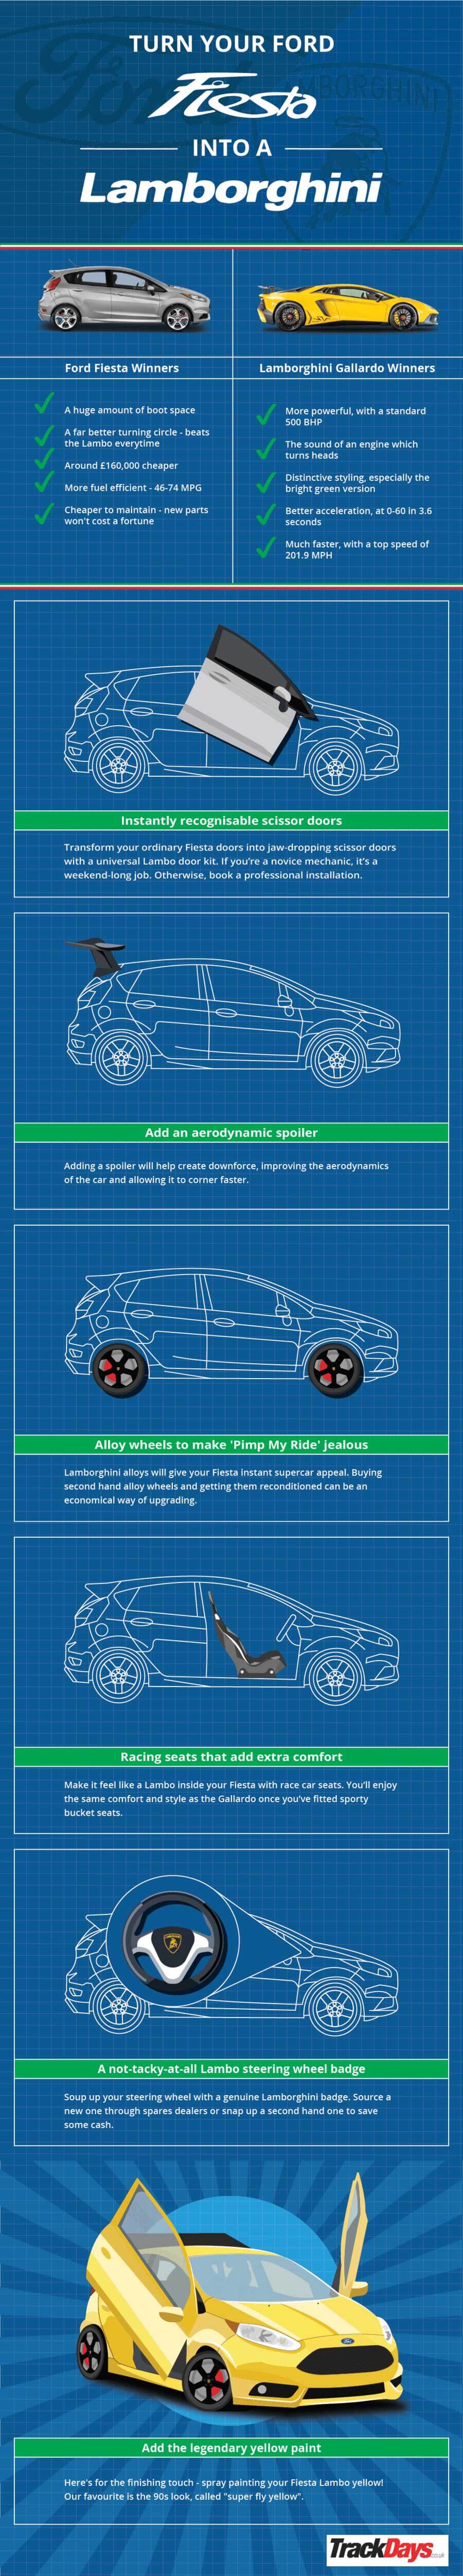 Infographic: Turn your Ford Fiesta into a Lamborghini Gallardo